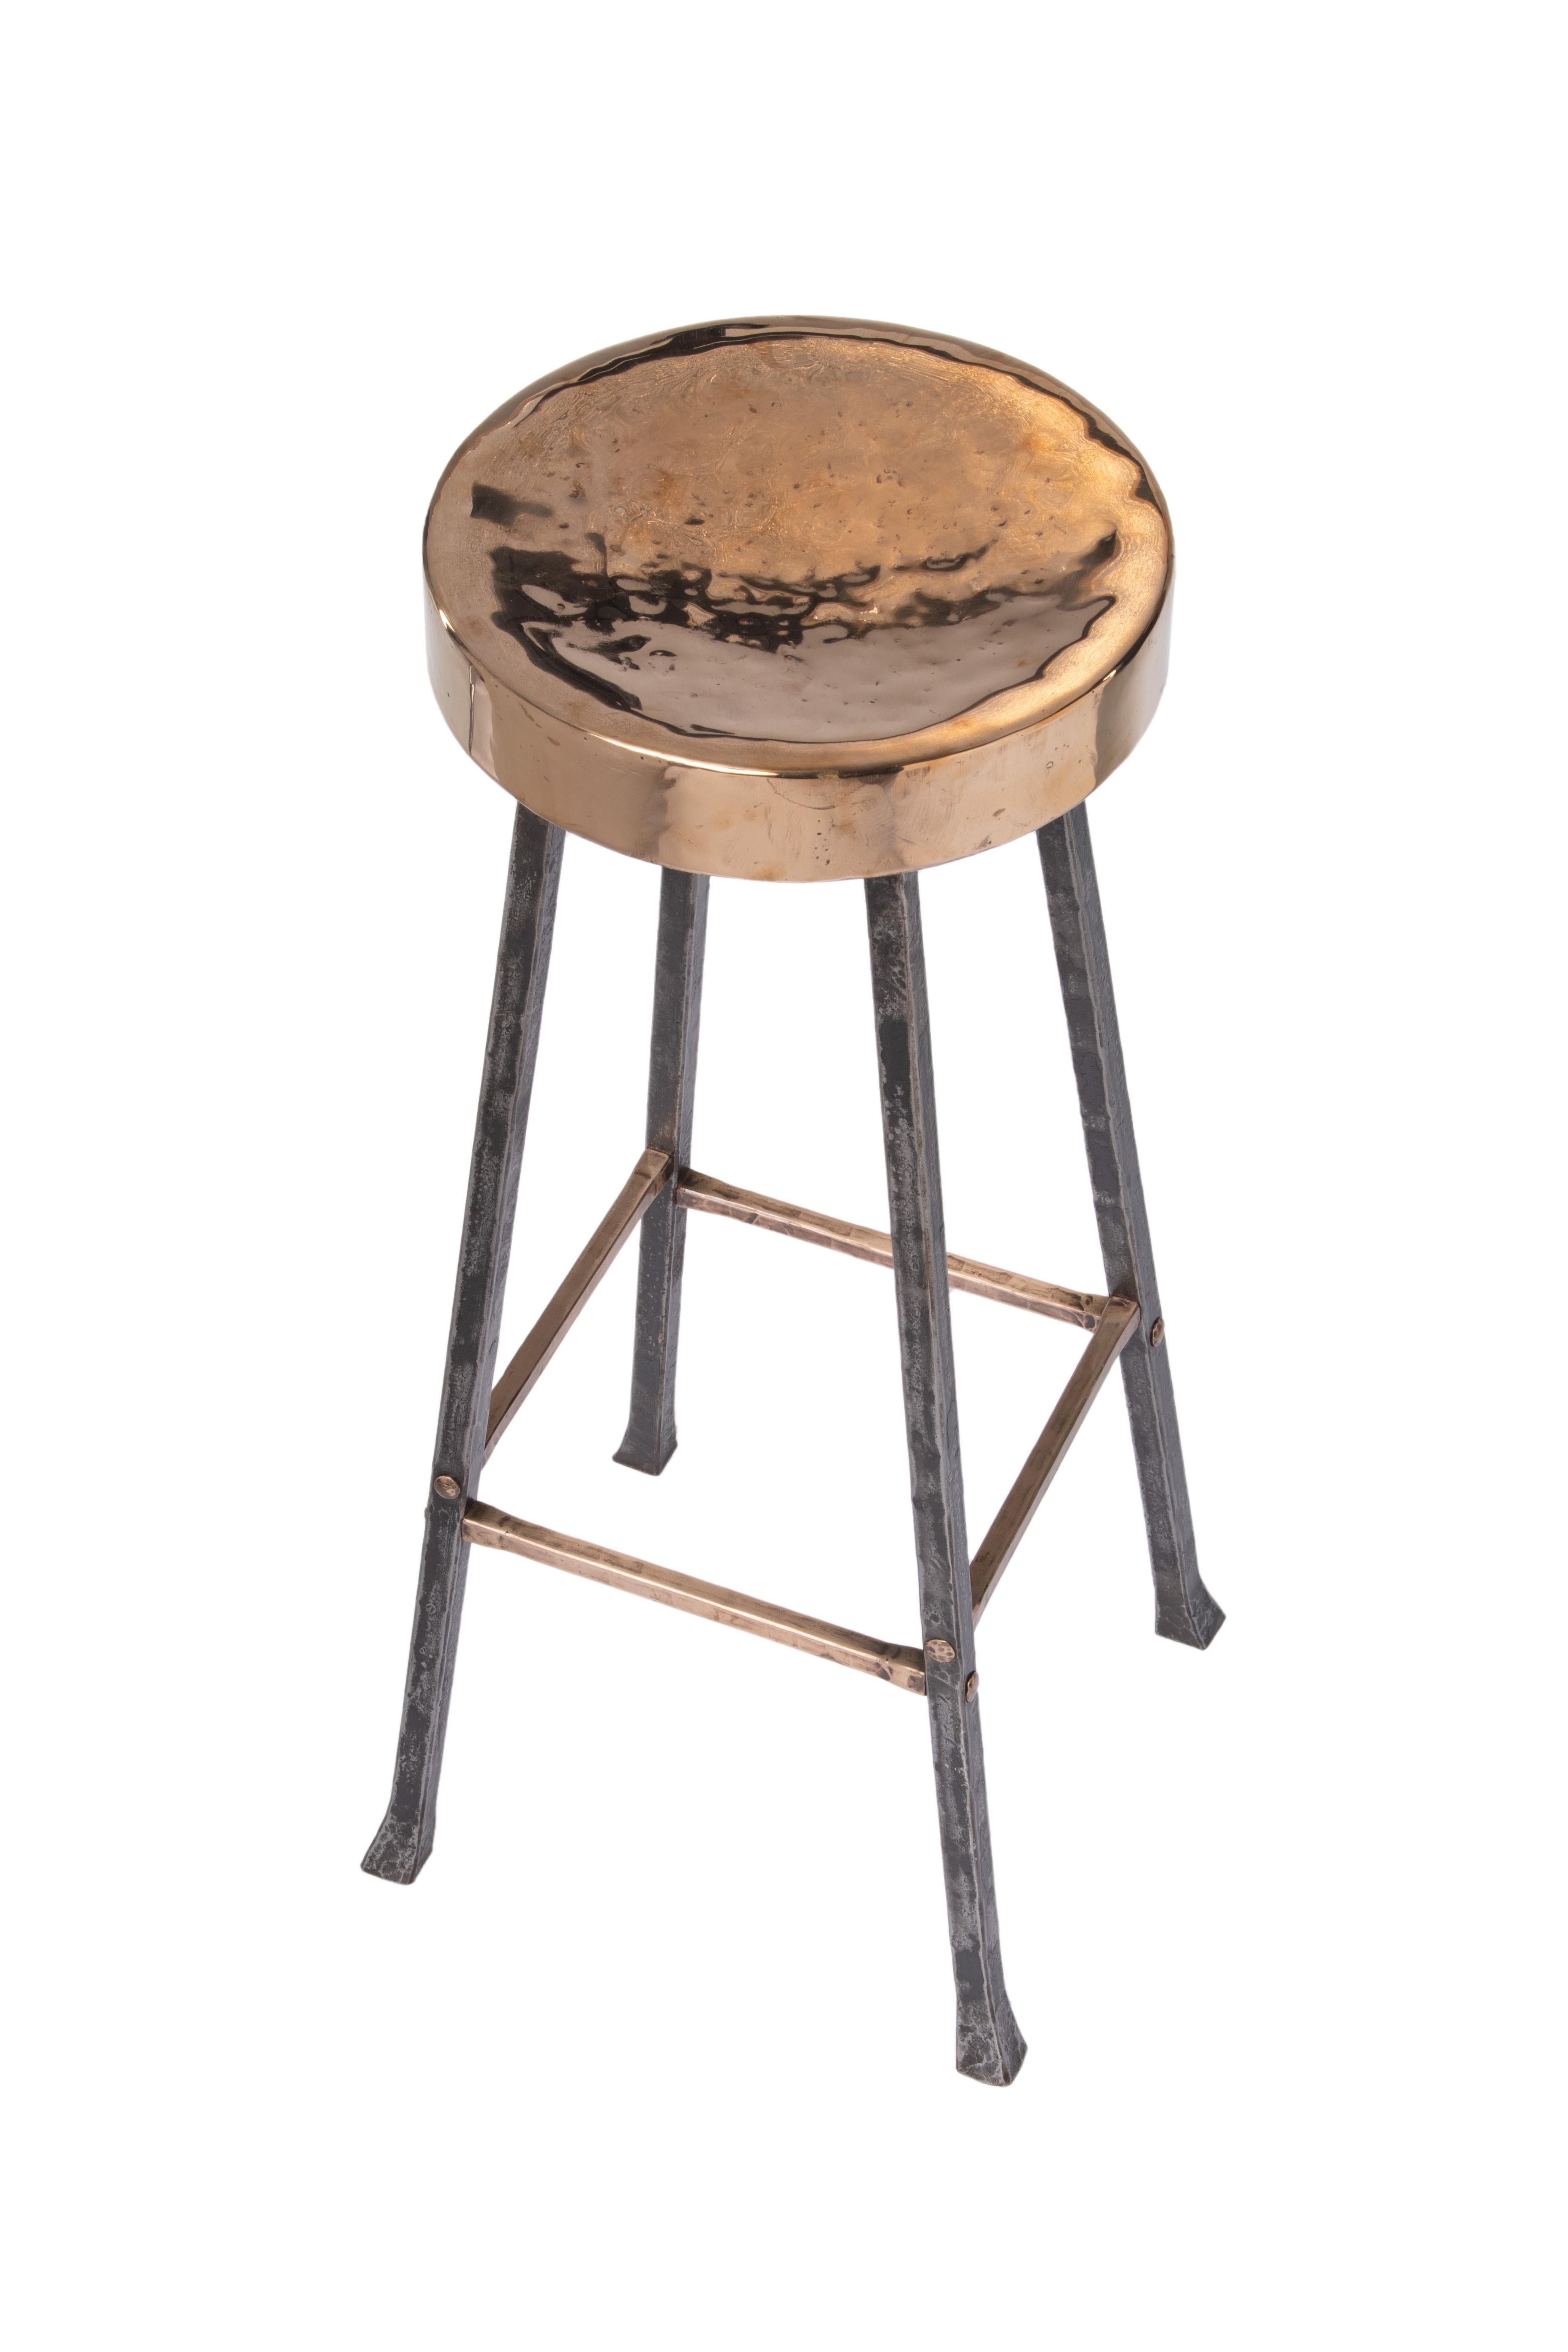 Dieser Hocker aus Bronze und Stahl ist für die Kombination mit einer Bar gedacht. Der glatte Bronzesitz ist aus einem einzigen Stück Bronze gefertigt, das einen Holzkern umschließt. Die Stahlbeine werden mit traditionellen Tischlertechniken